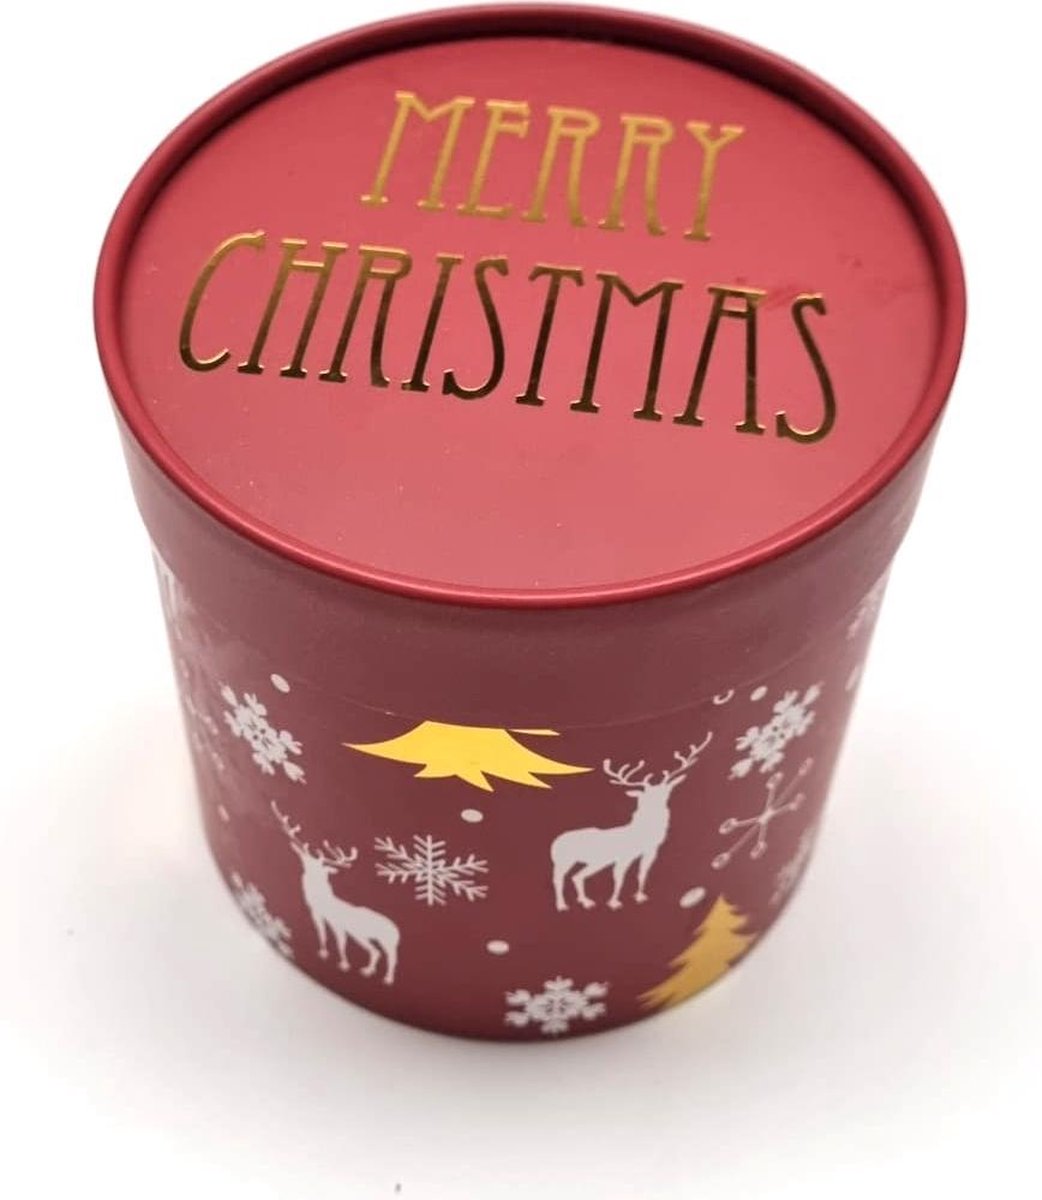 Cactula kerst cadeau geschenkdoos gevuld met Rustik Lys korte dinerkaarsen 30 stuks | Rood / Wit / Goud / Zwart / Groen